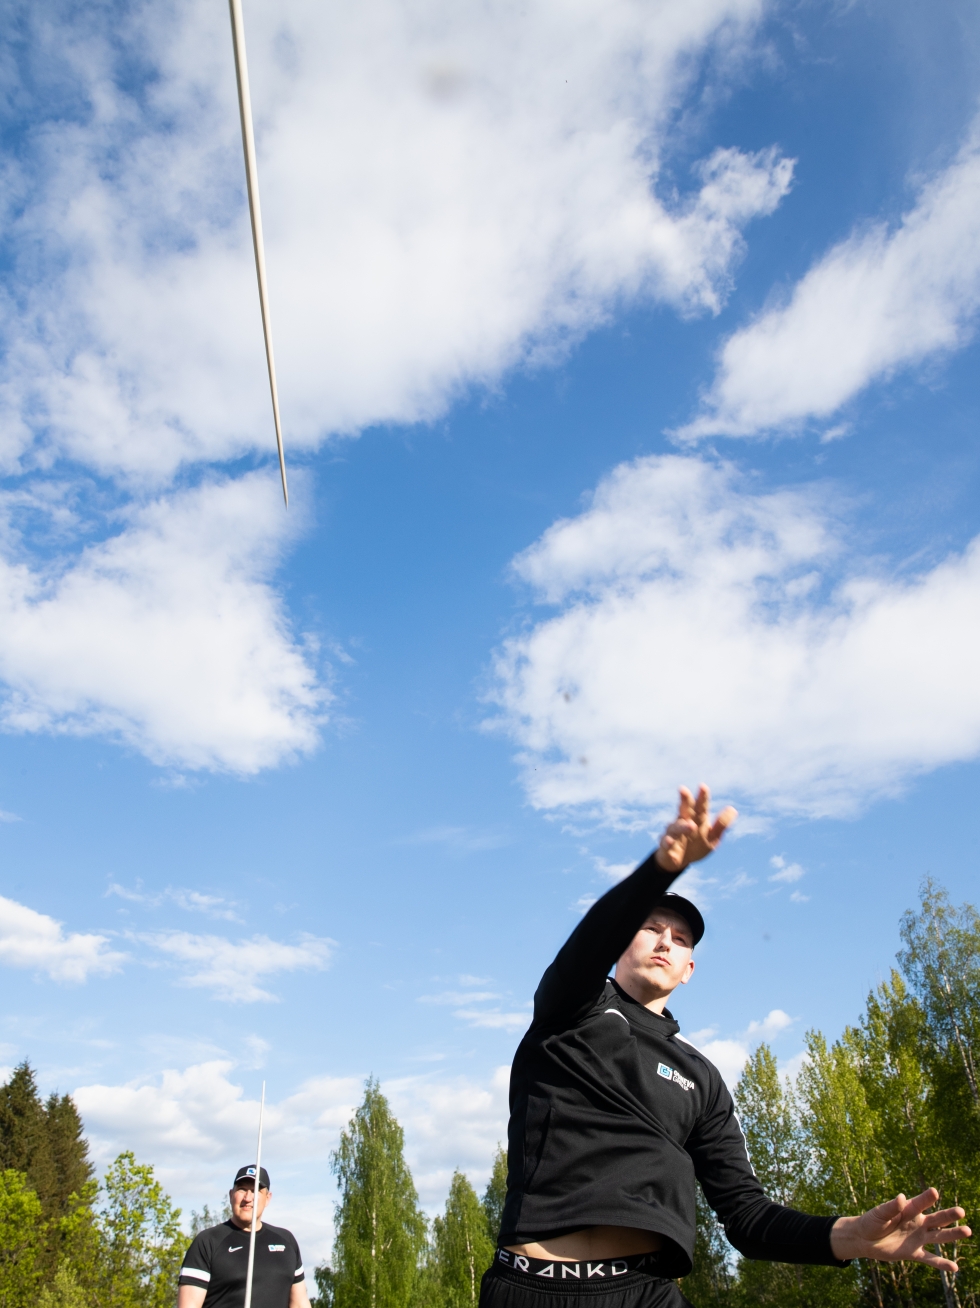 Topi Parviaisen keihäs lensi harjoitusheitolla 74,5 metrin mittaisen kaaren sunnuntaina Pyhäselässä. Arkistokuva.